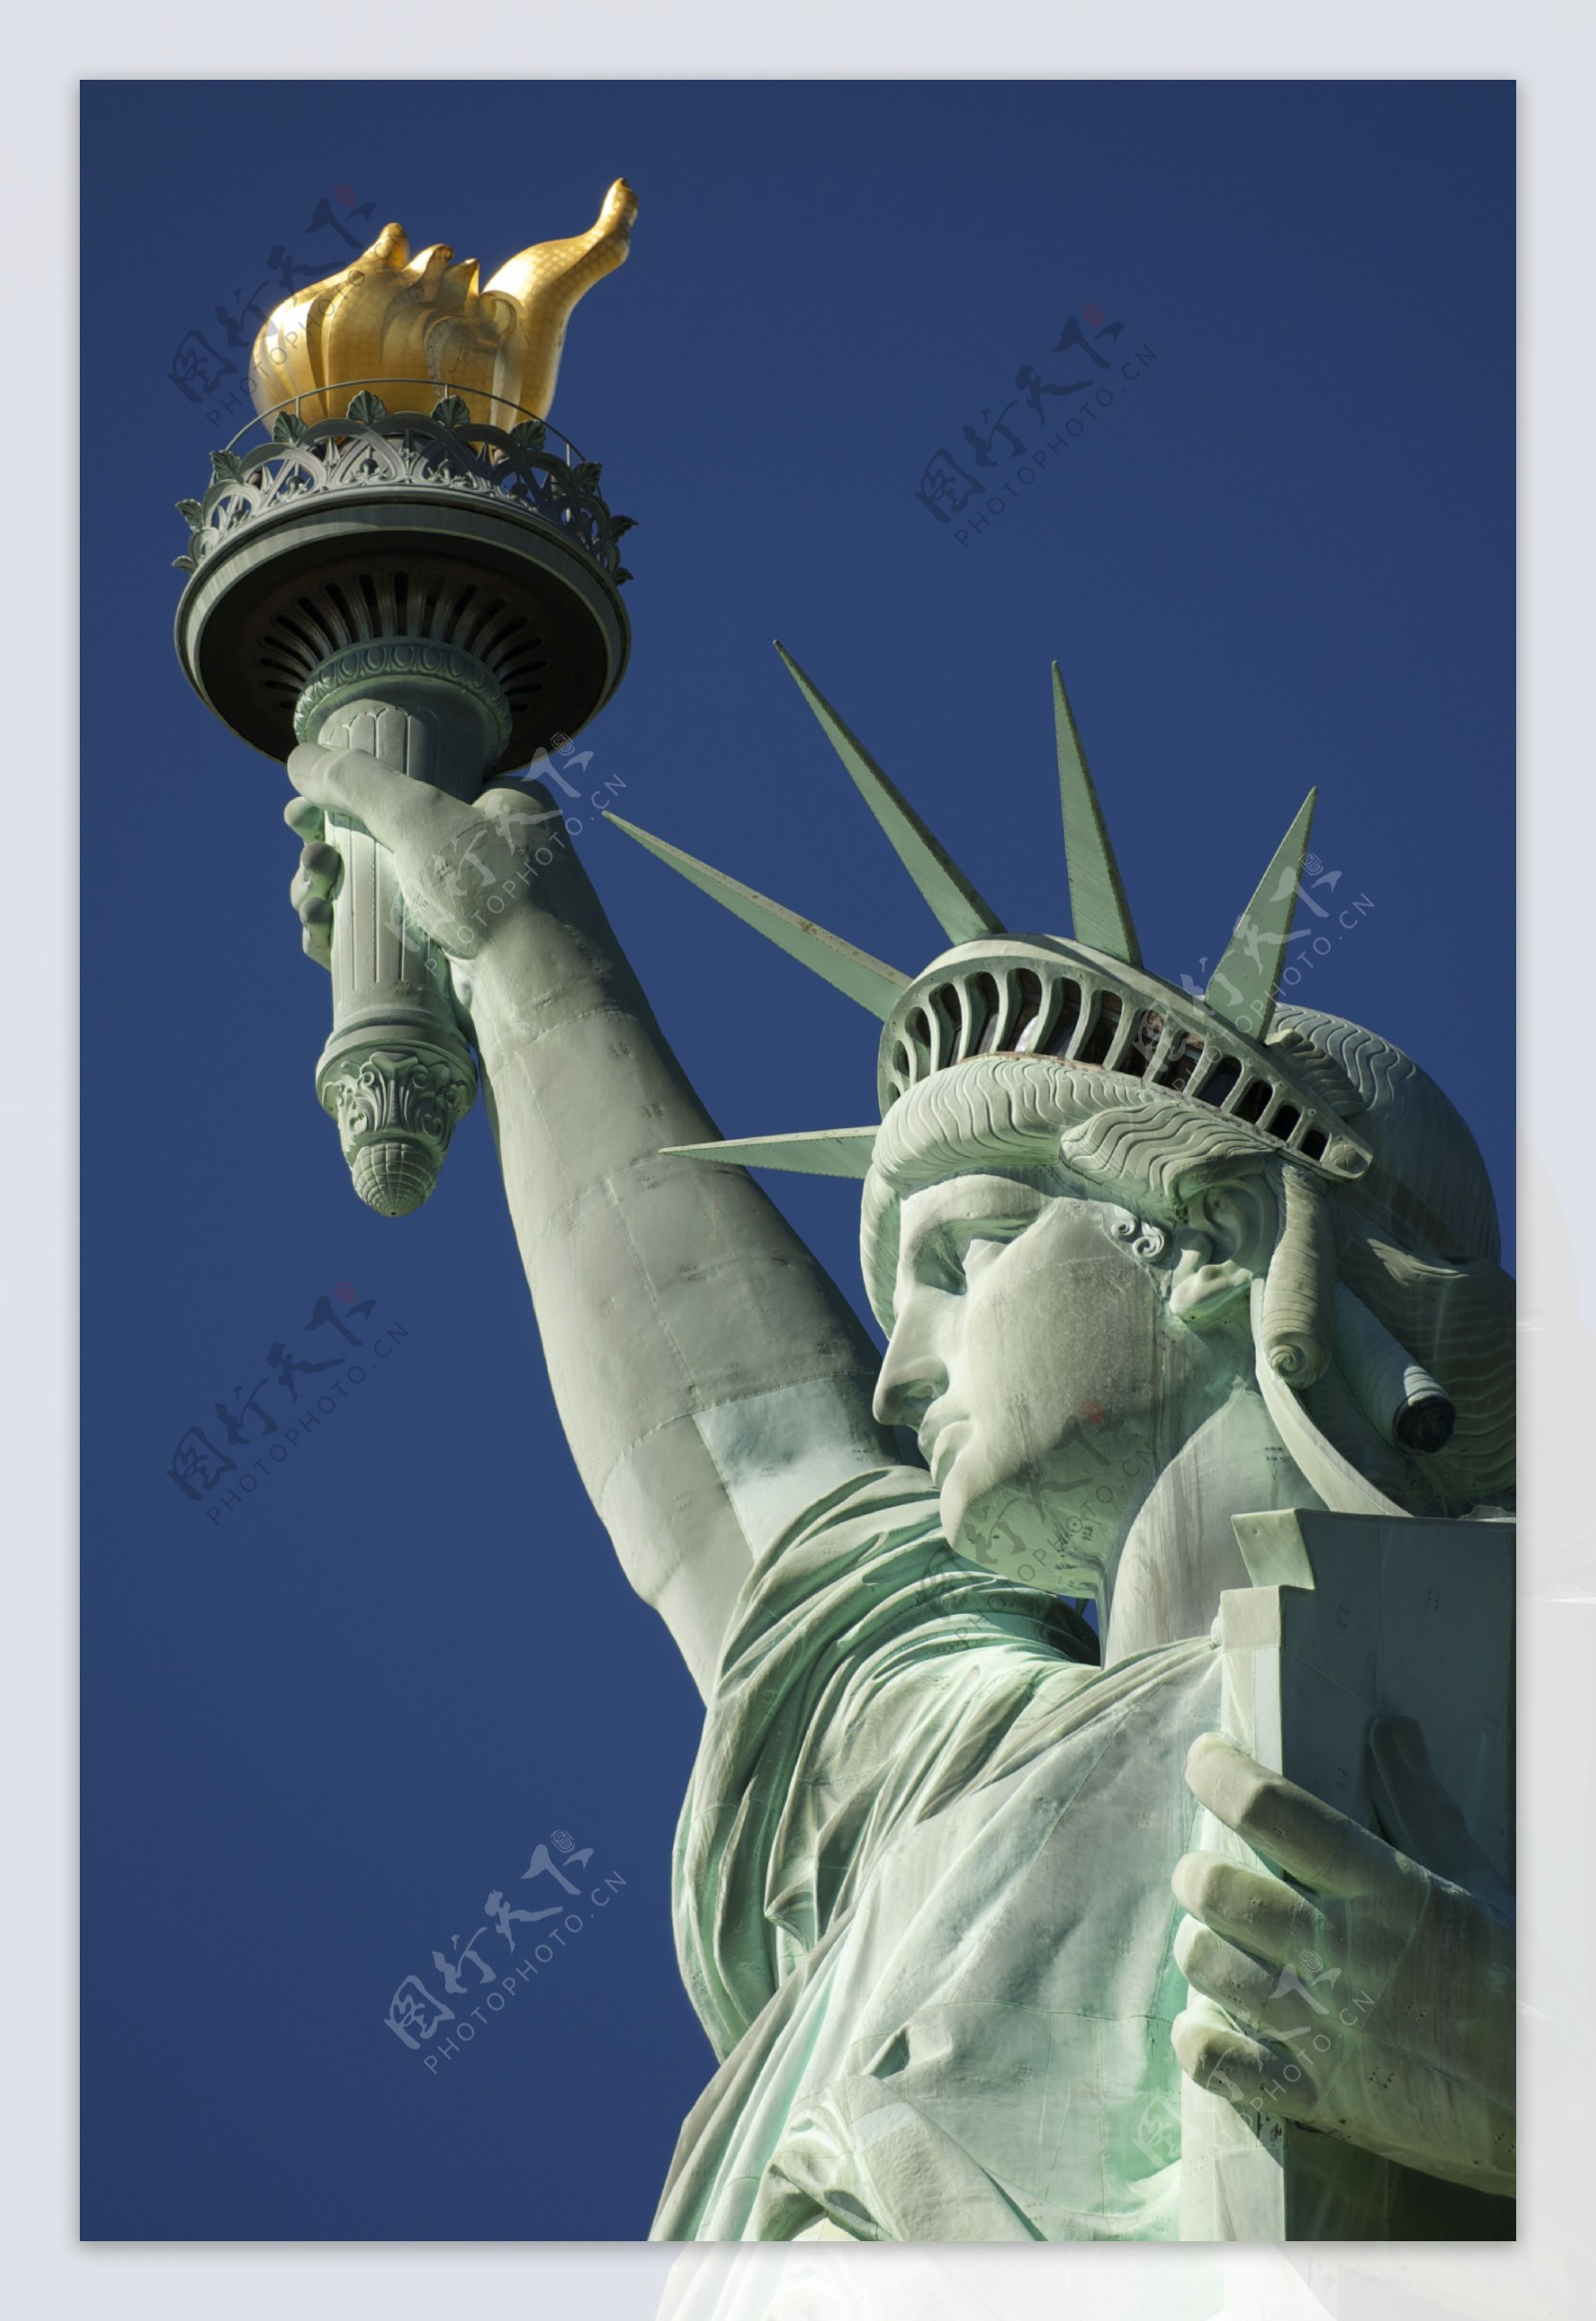 2019自由女神像_旅游攻略_门票_地址_游记点评,纽约旅游景点推荐 - 去哪儿攻略社区